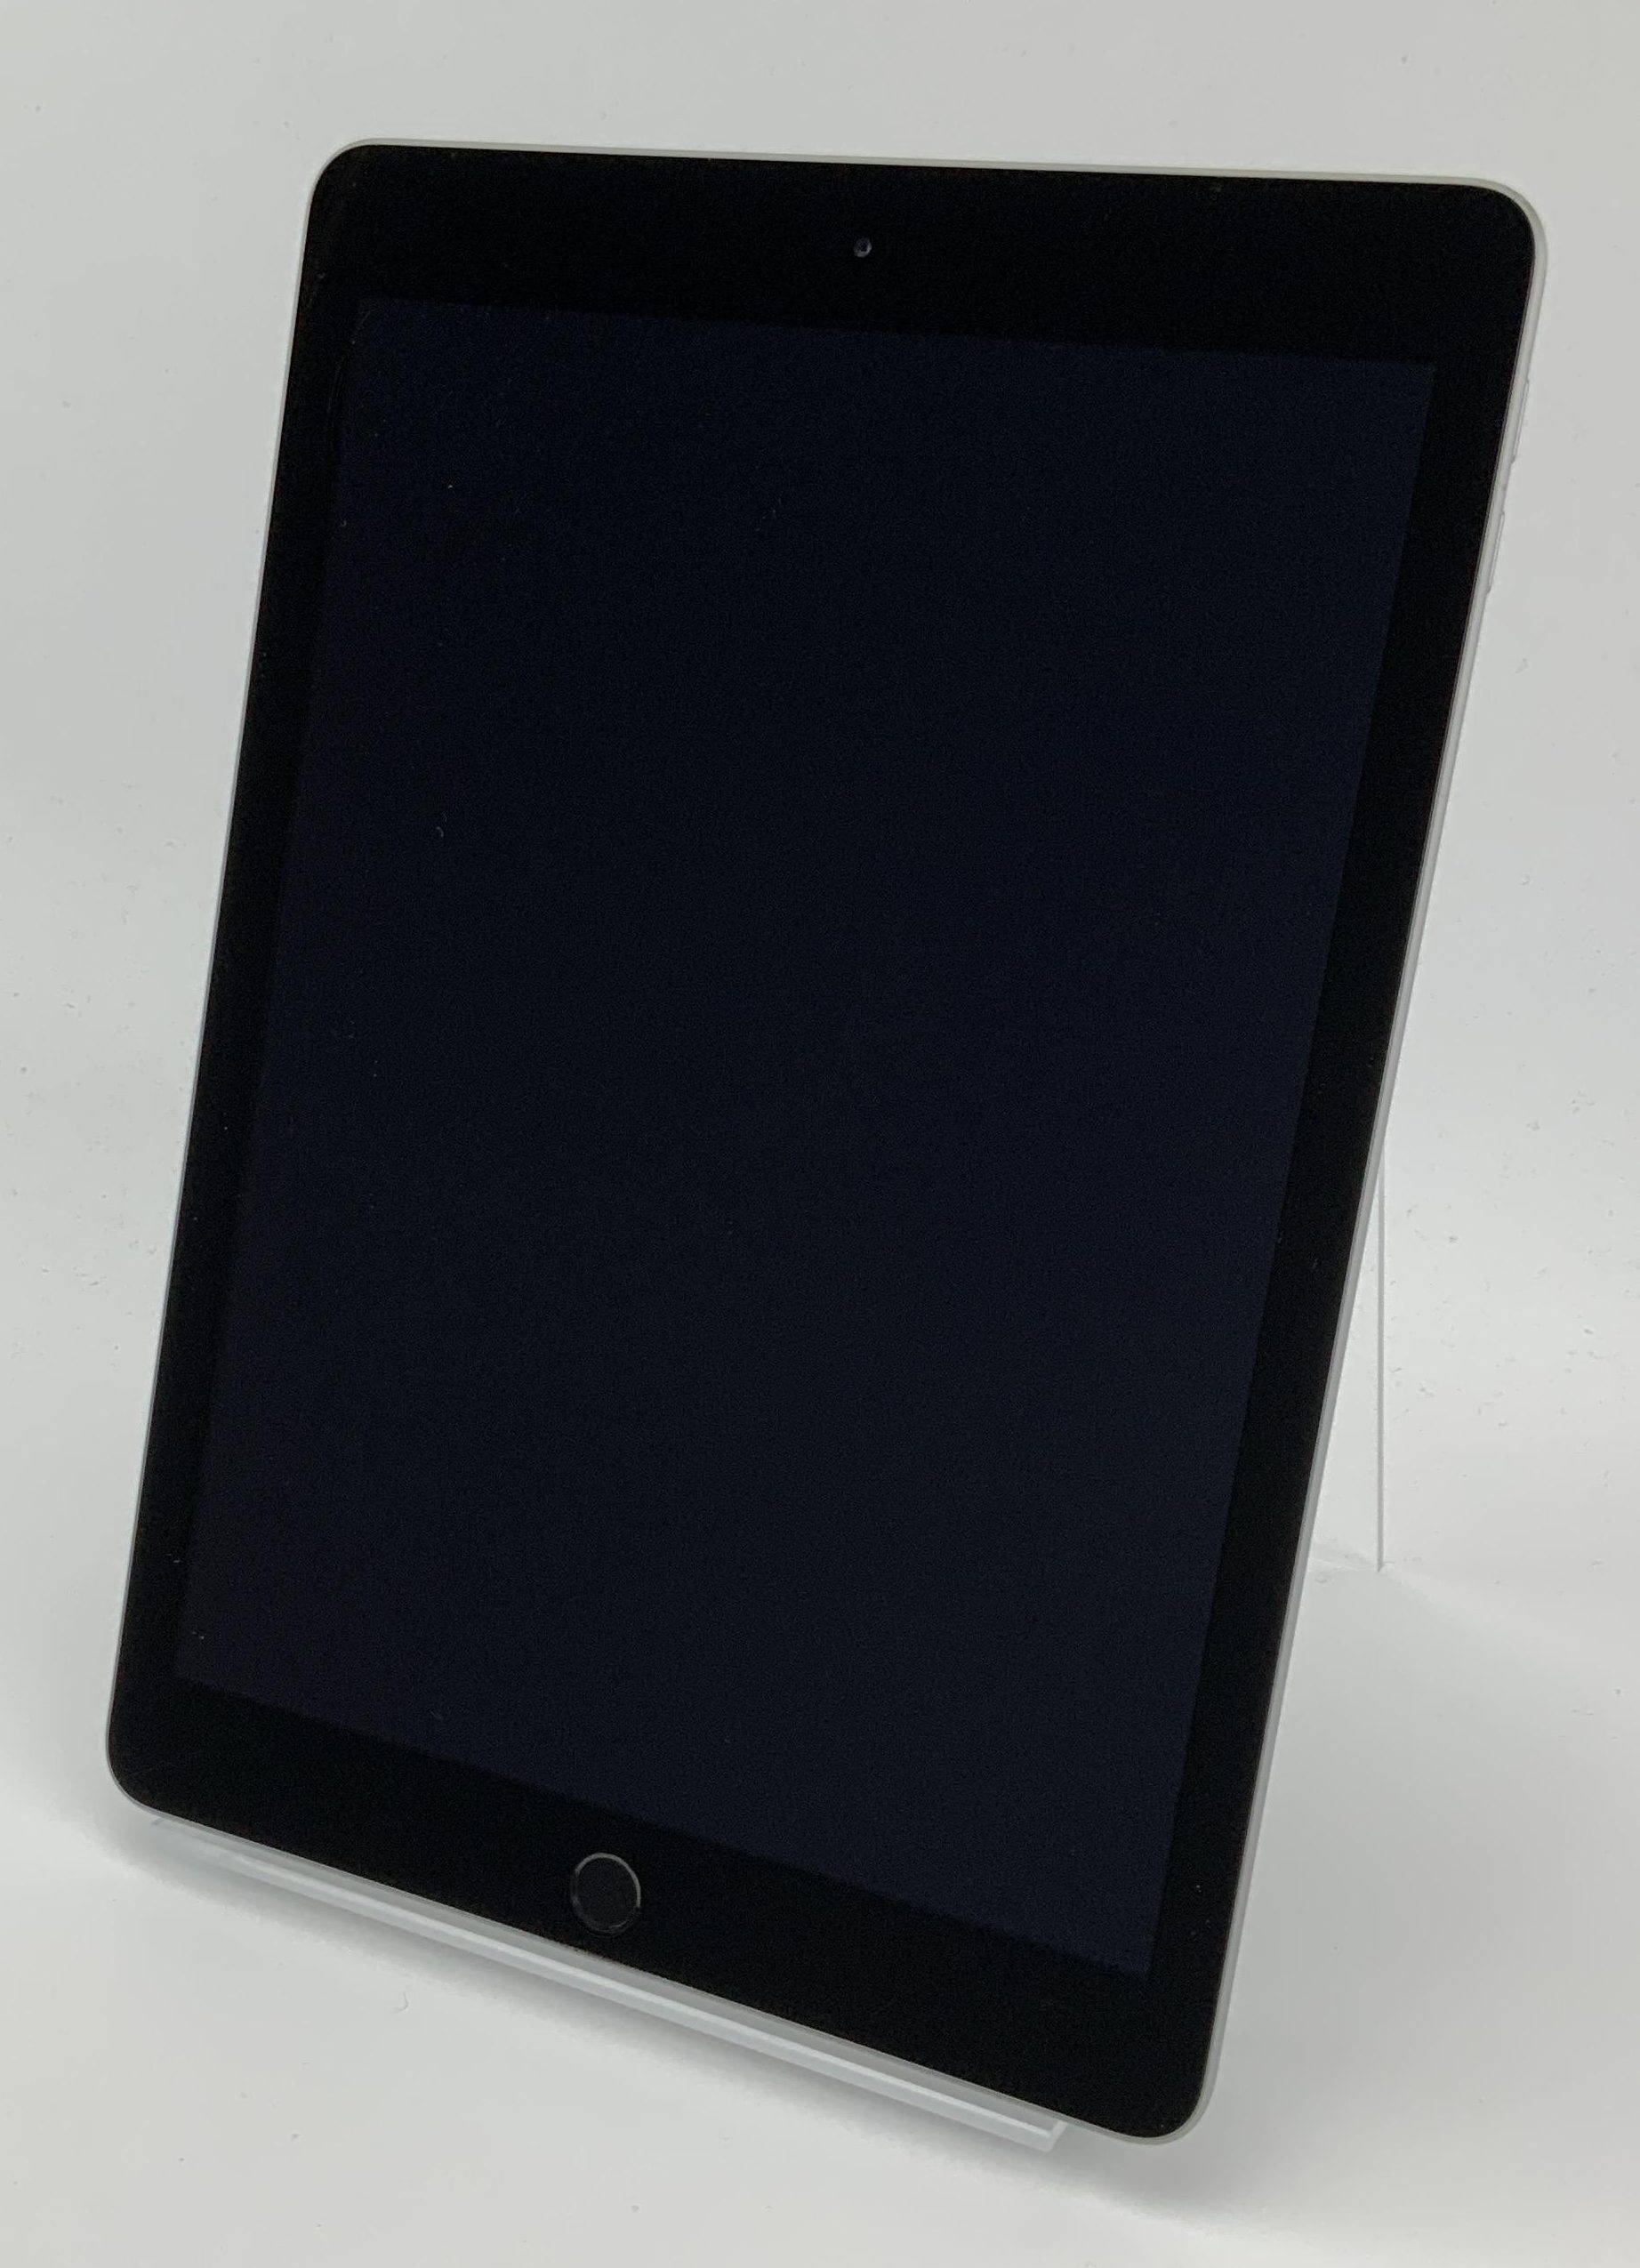 iPad 5 Wi-Fi 128GB, 128GB, Space Gray, immagine 1